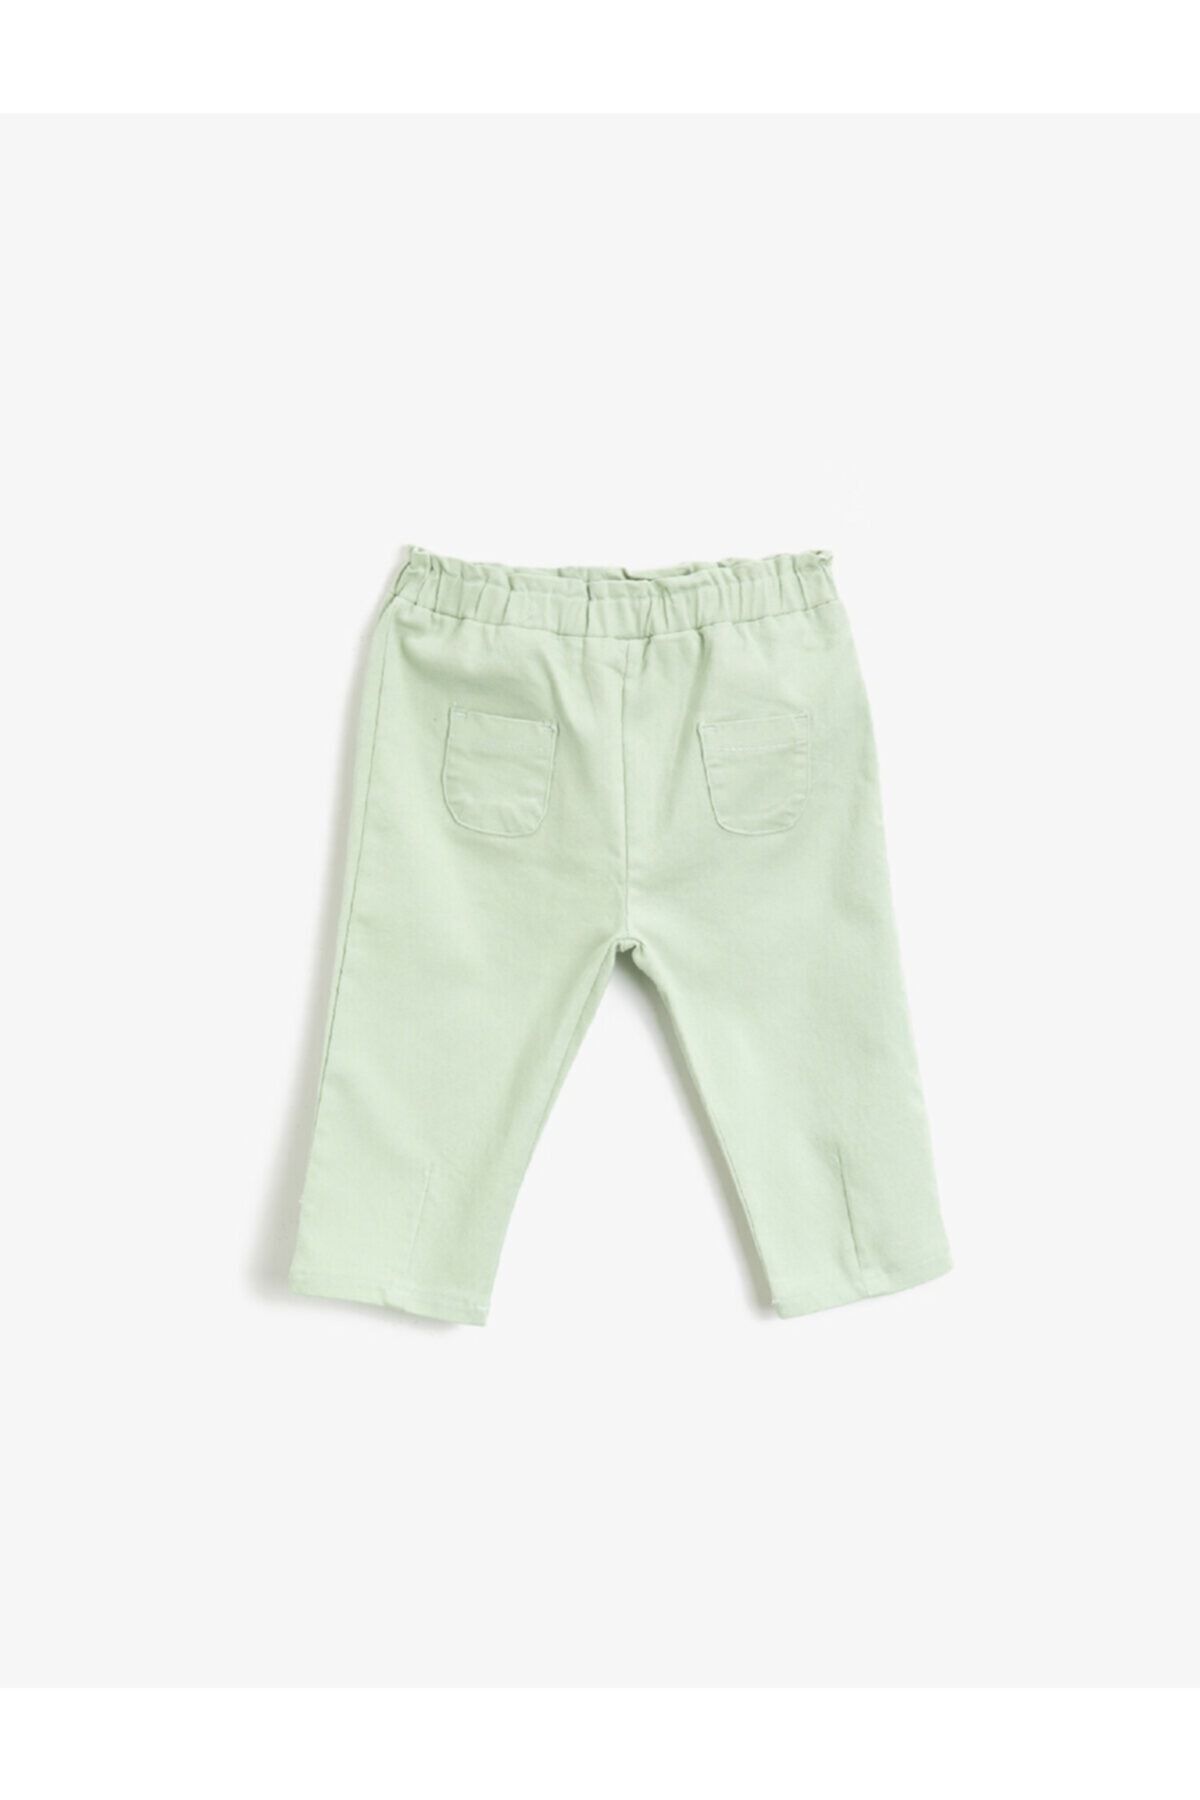 Koton Kız Bebek Yeşil Cepli Beli Lastikli Pantolon